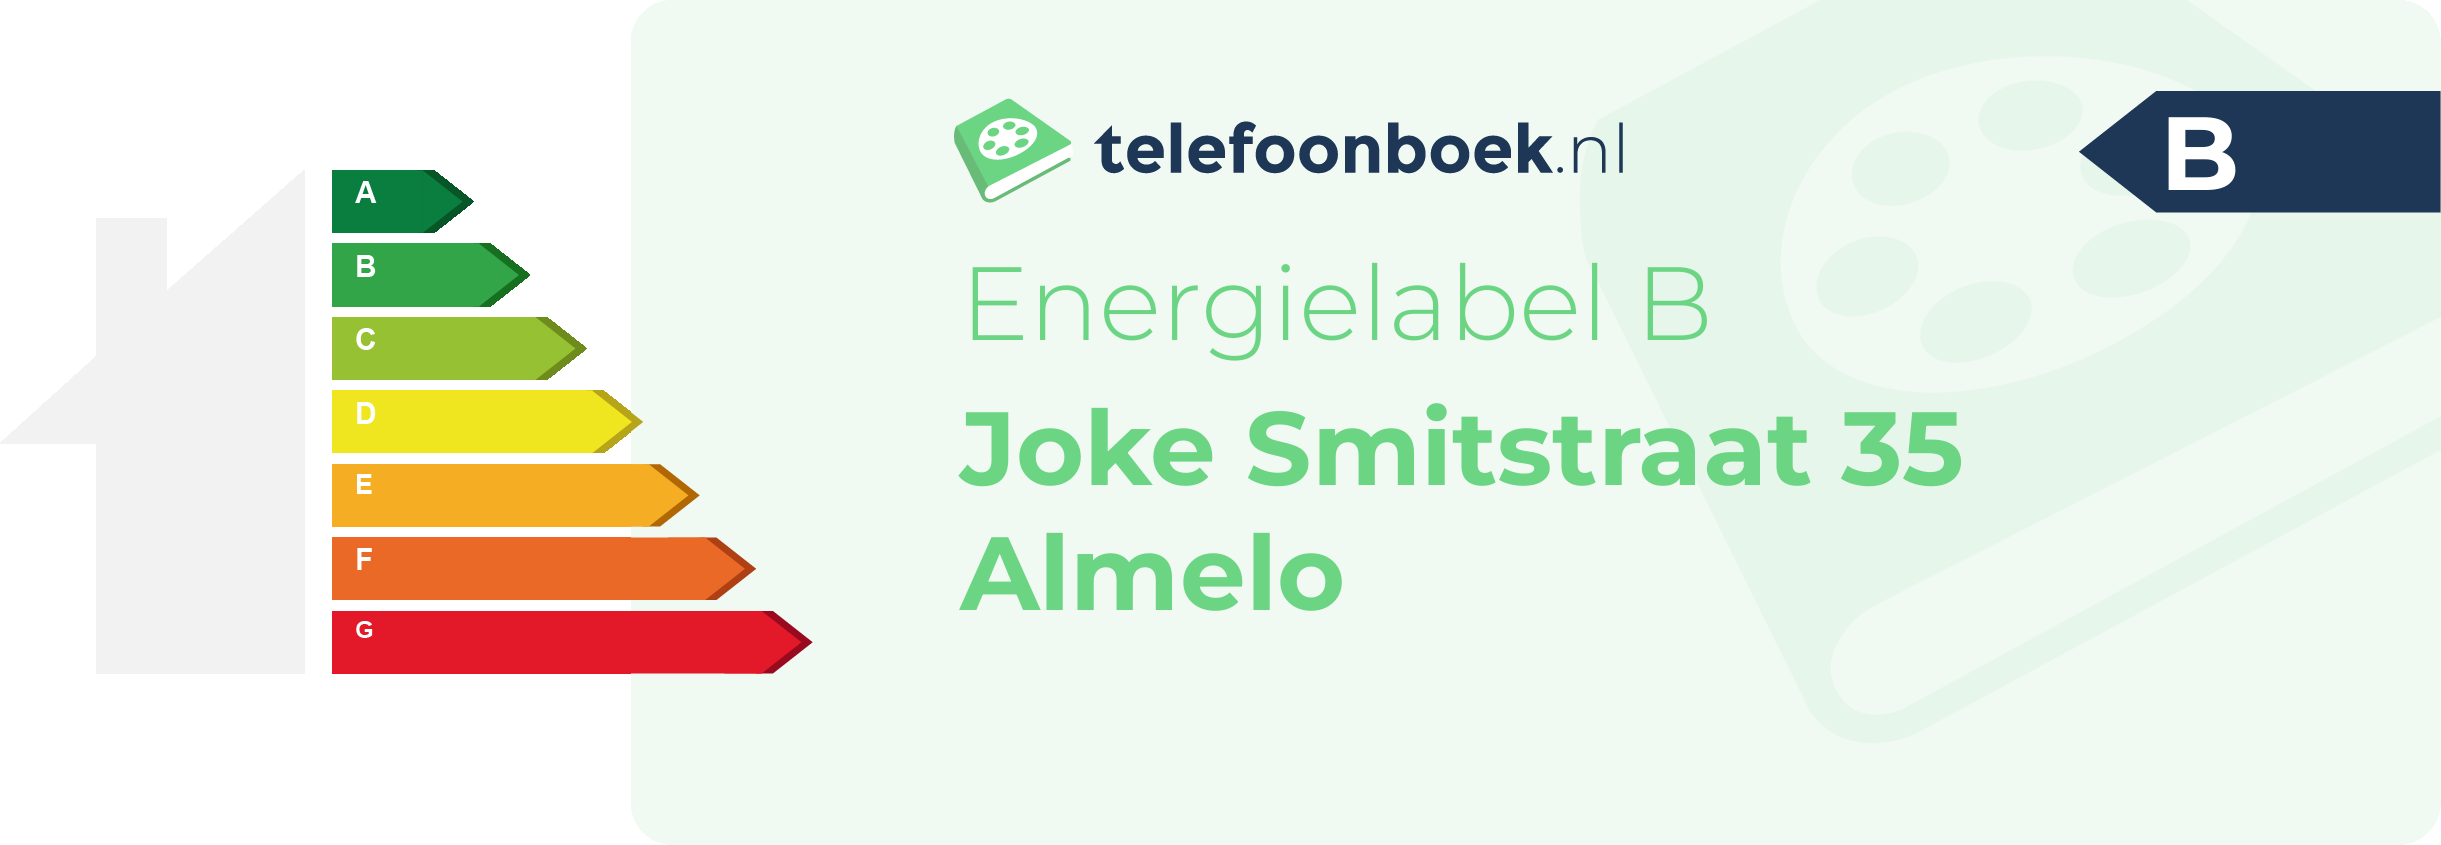 Energielabel Joke Smitstraat 35 Almelo